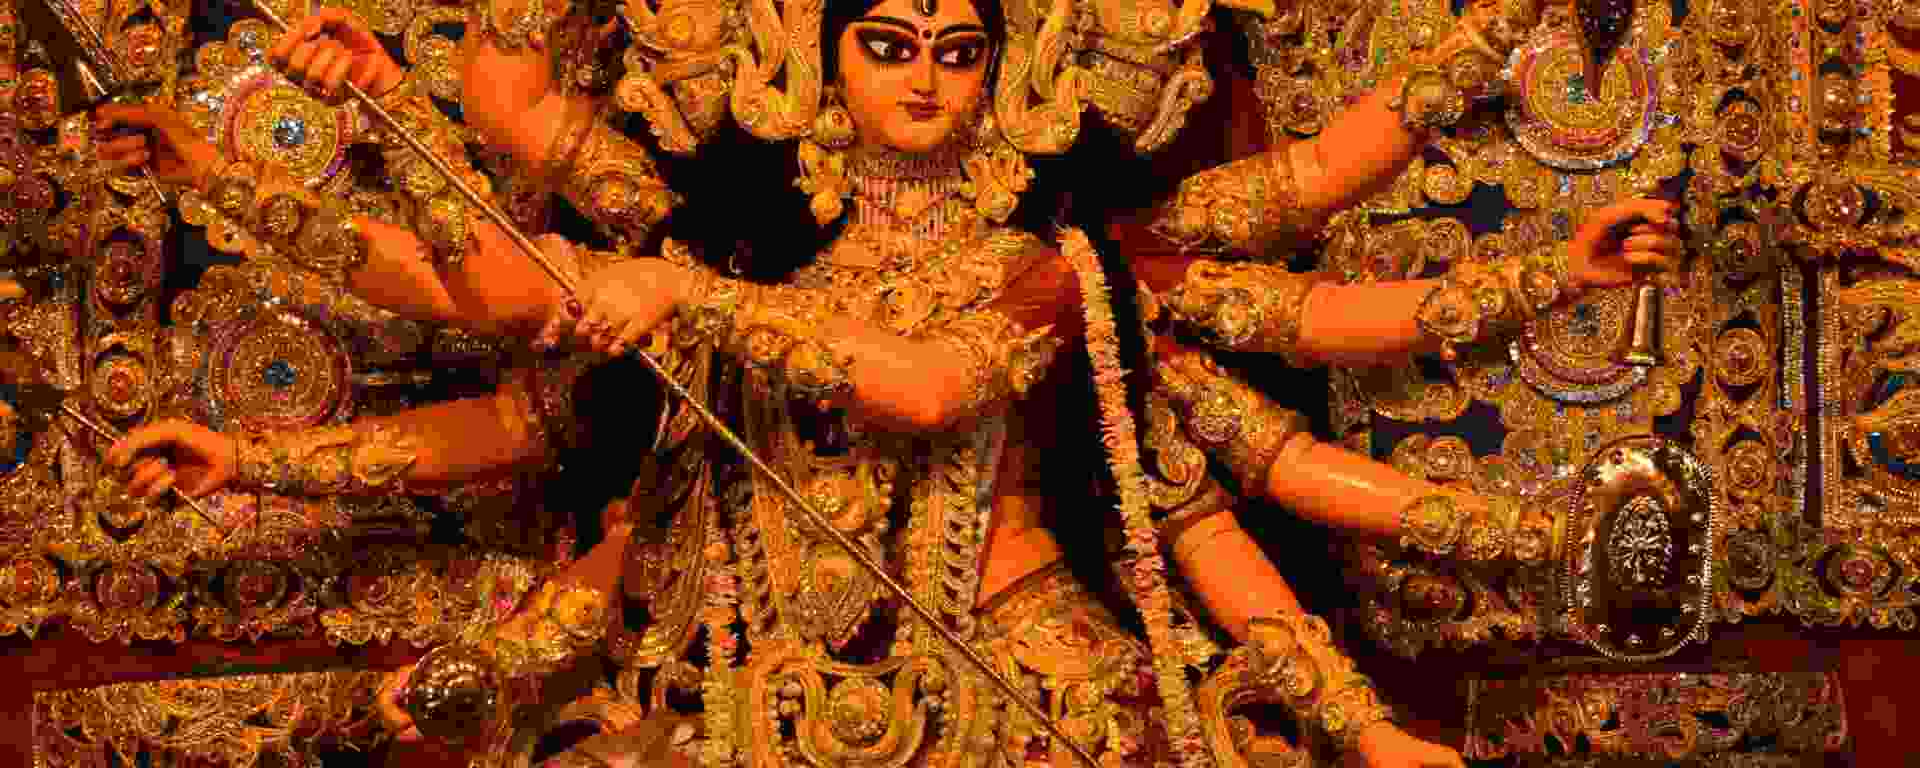 goddess durga killing asur